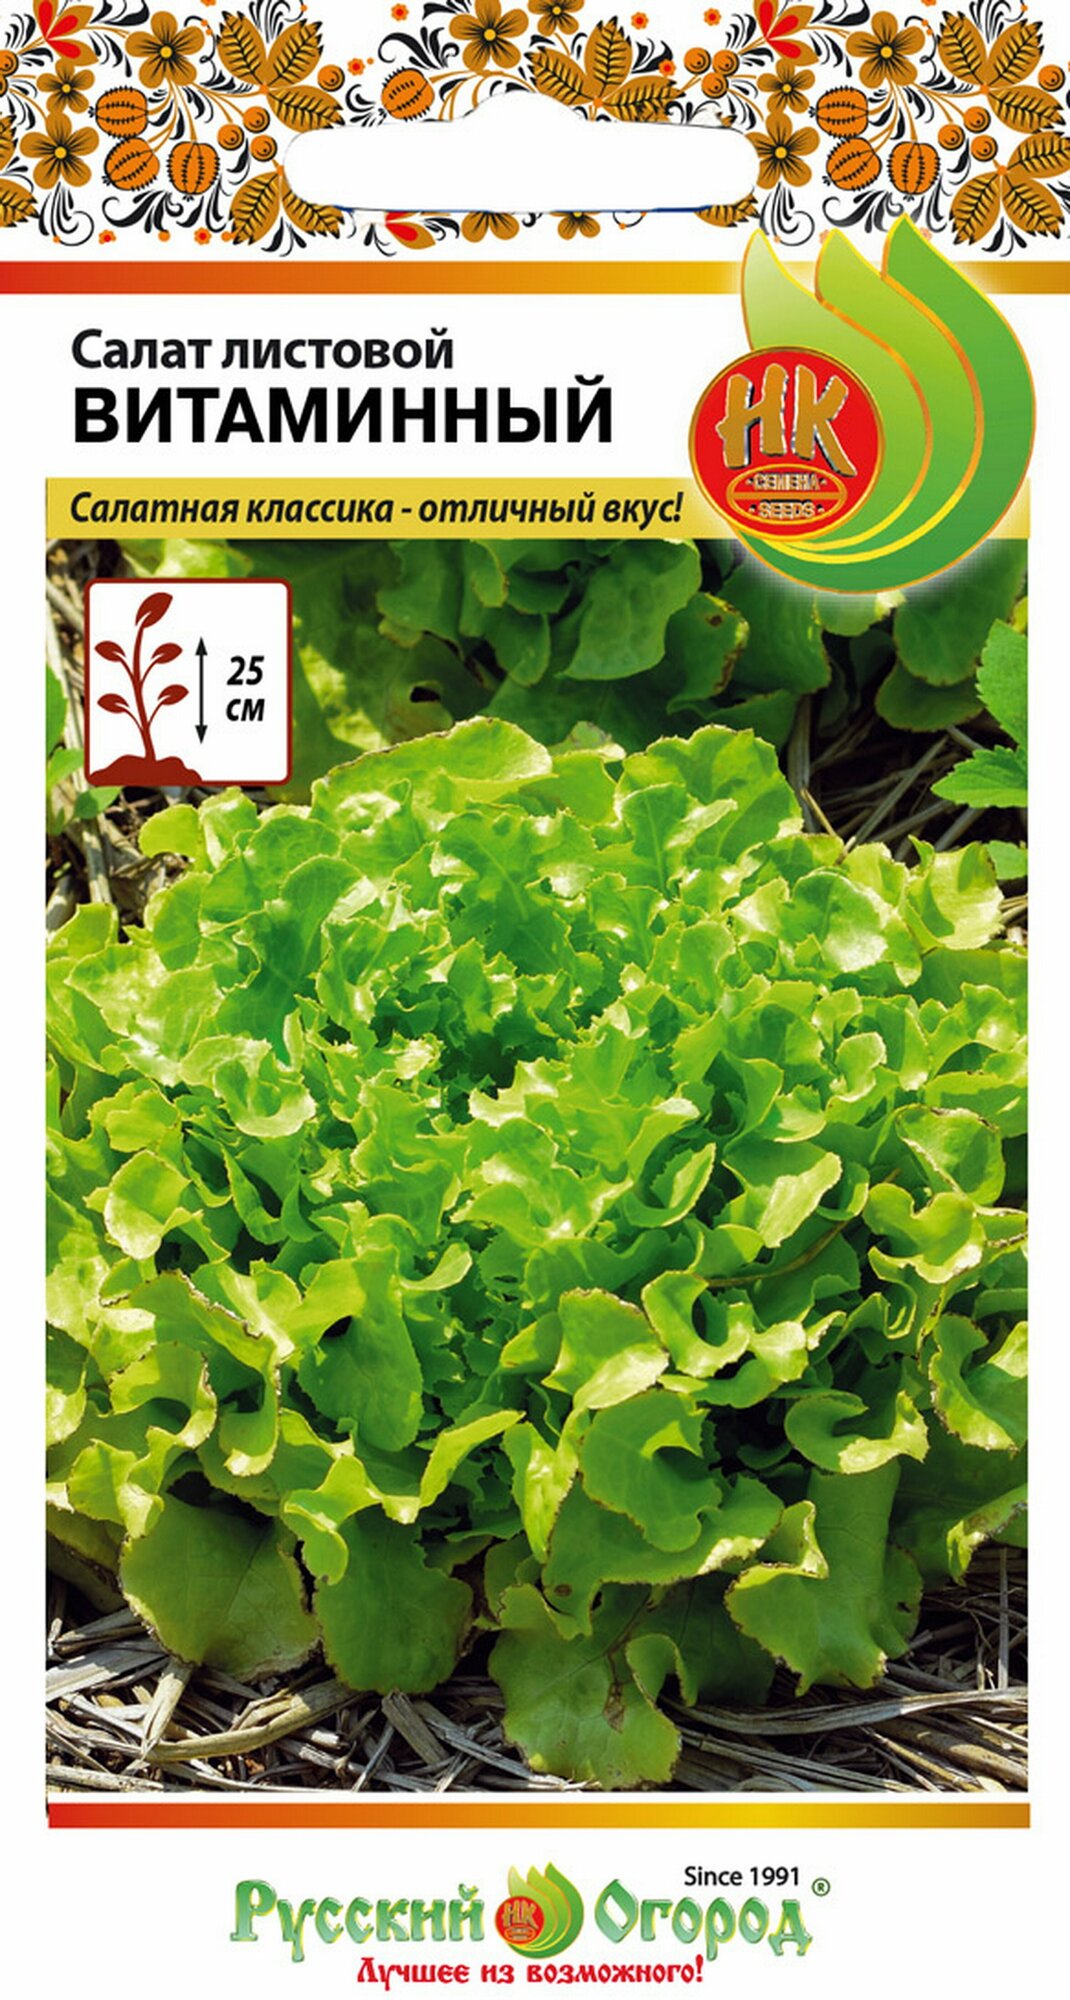 Семена Салат листовой Витаминный 1 грамм семян Русский Огород